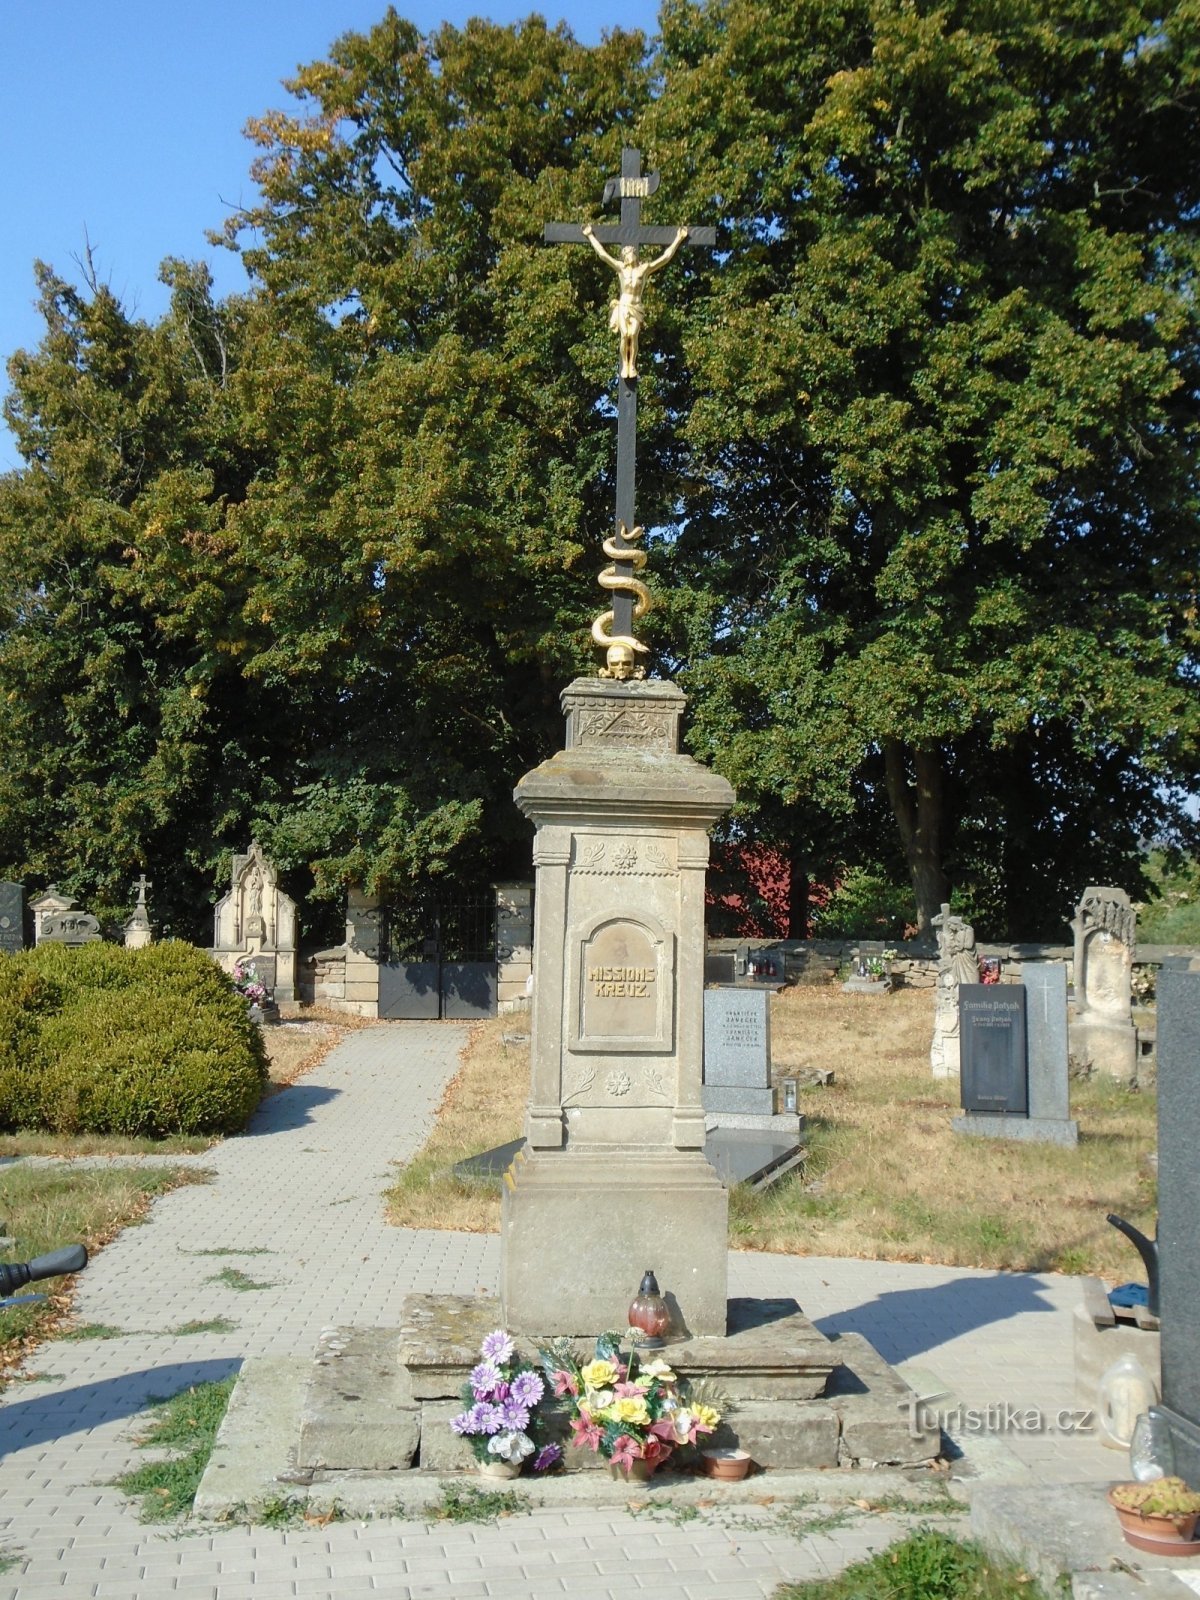 Krzyż misyjny na cmentarzu (Zaloňov, 17.8.2018)